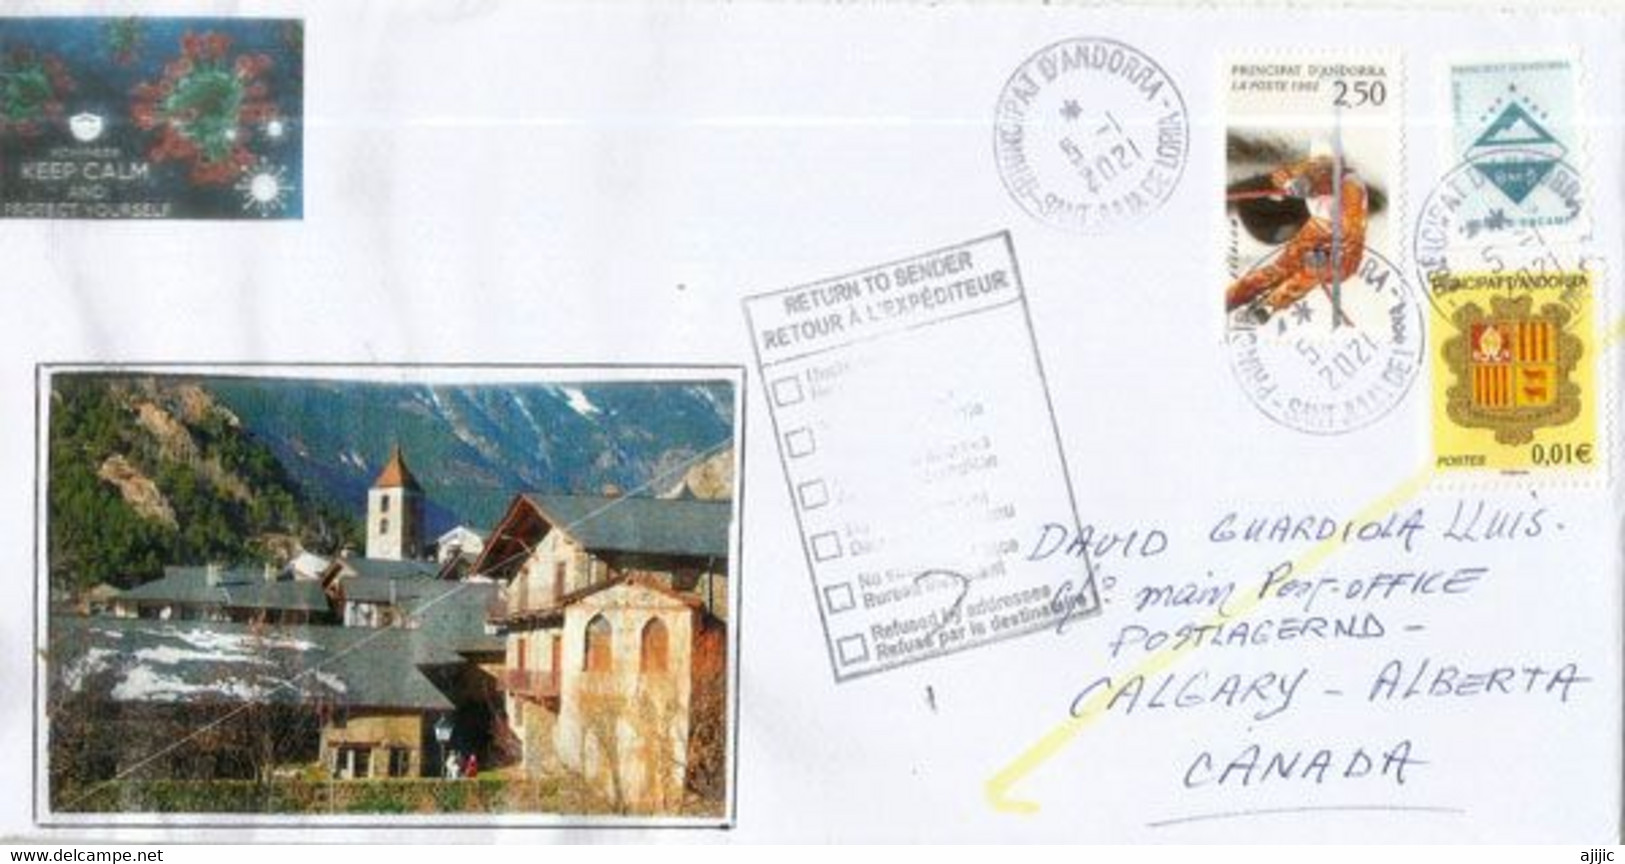 Lettre D'Andorre Adressée Au Canada Pendant Confinement Covid-19 , Return To Sender, Deux Photos - Covers & Documents